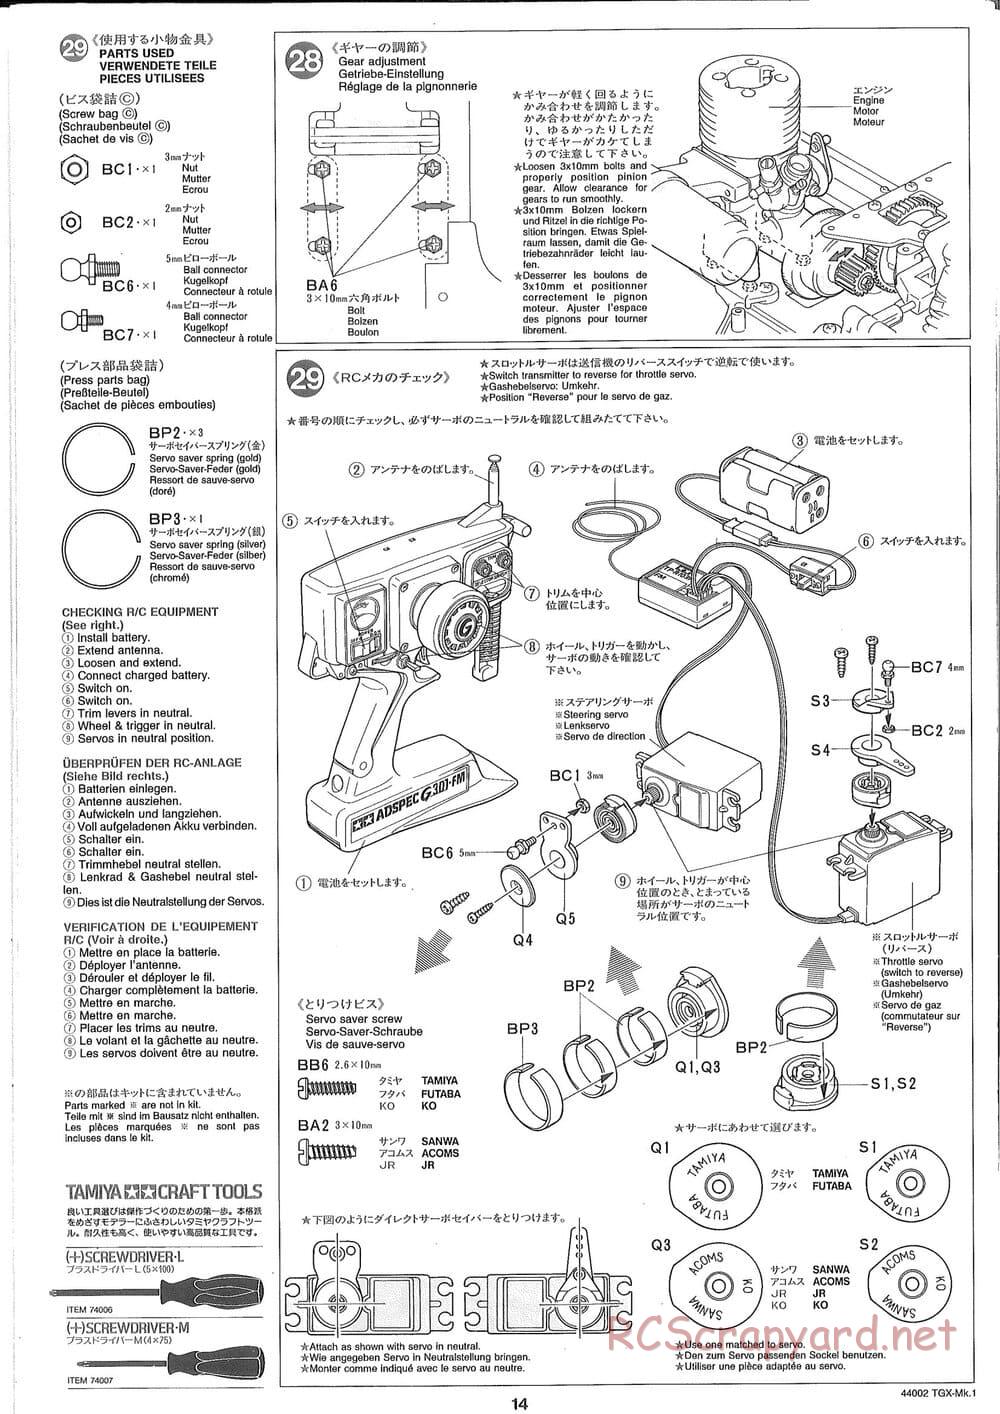 Tamiya - TGX Mk.1 TS Chassis Chassis - Manual - Page 14